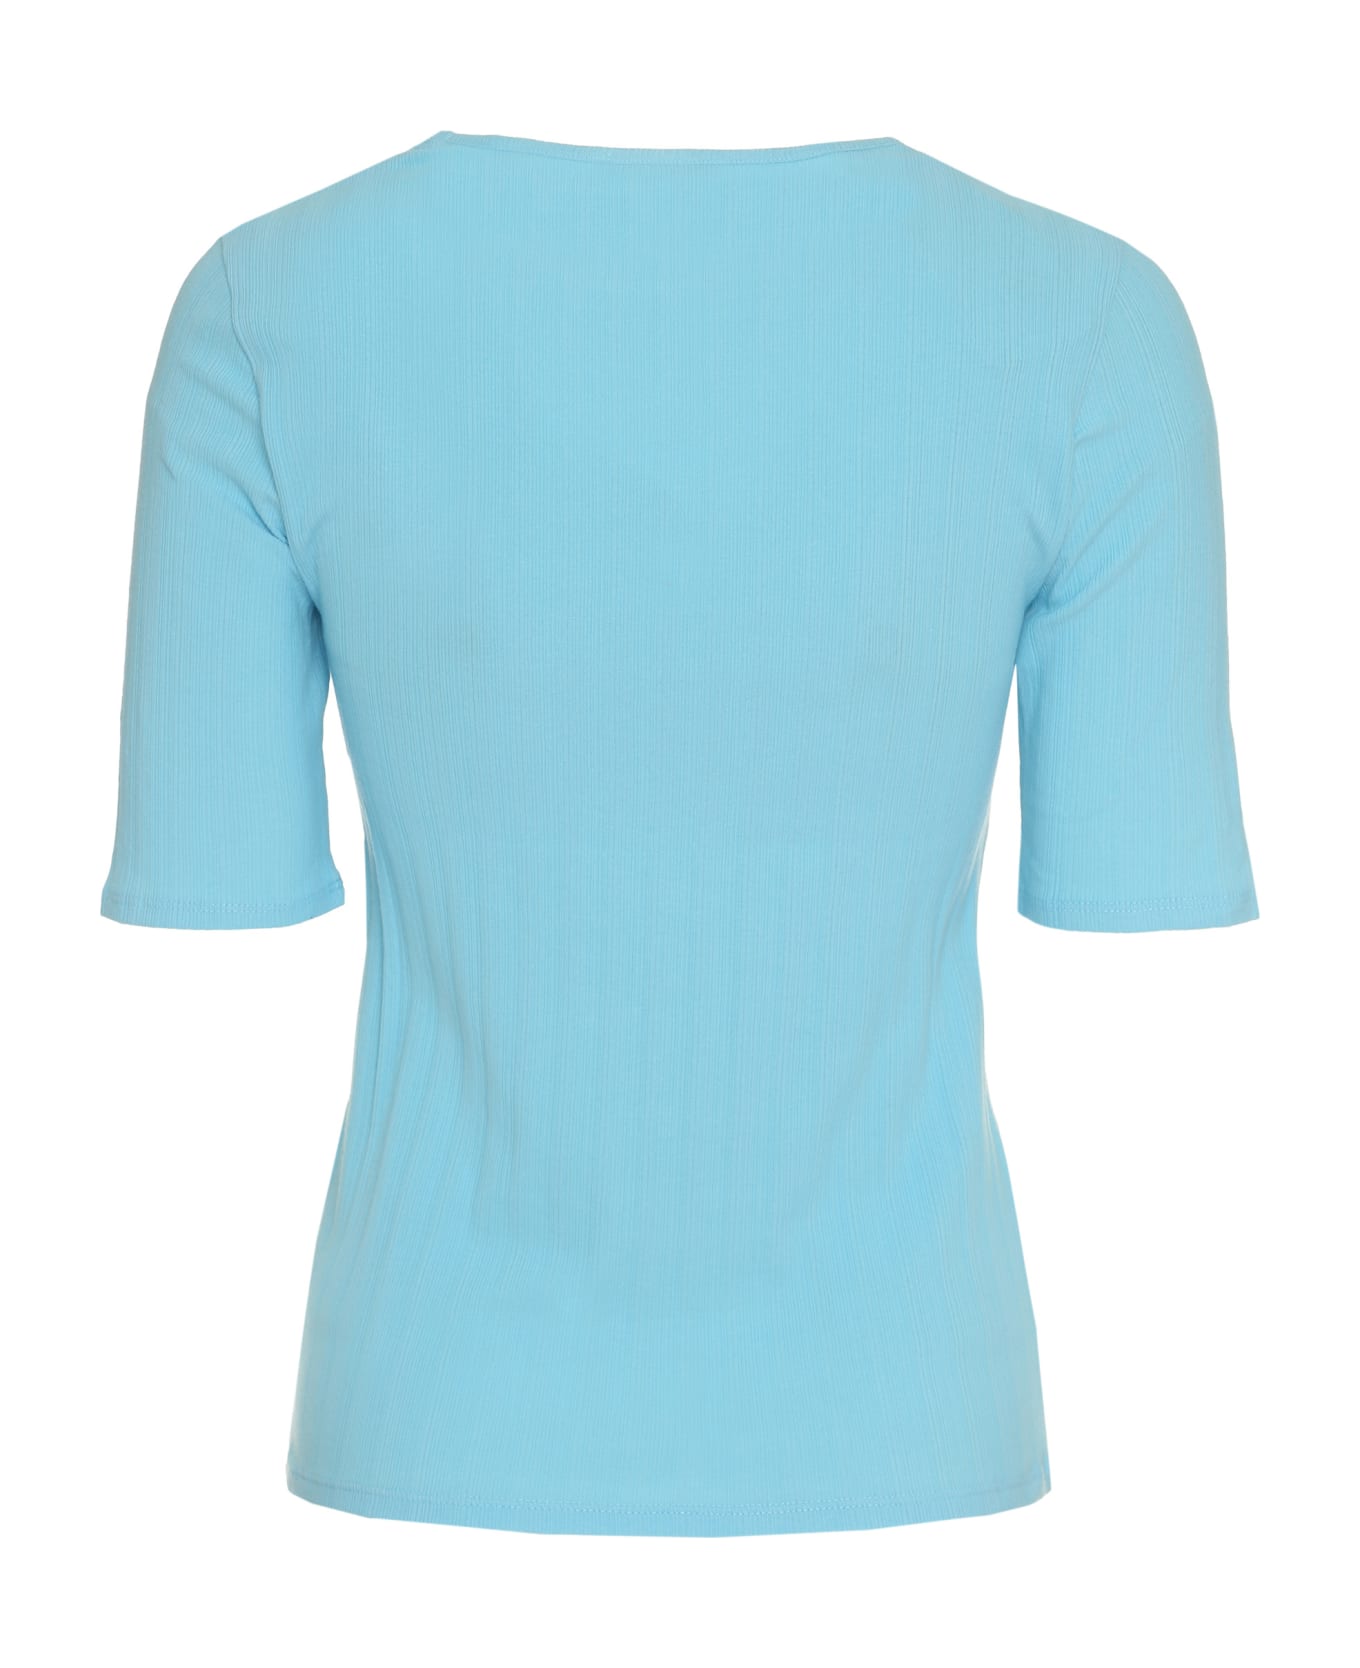 Vince Cotton Knit T-shirt - Light Blue